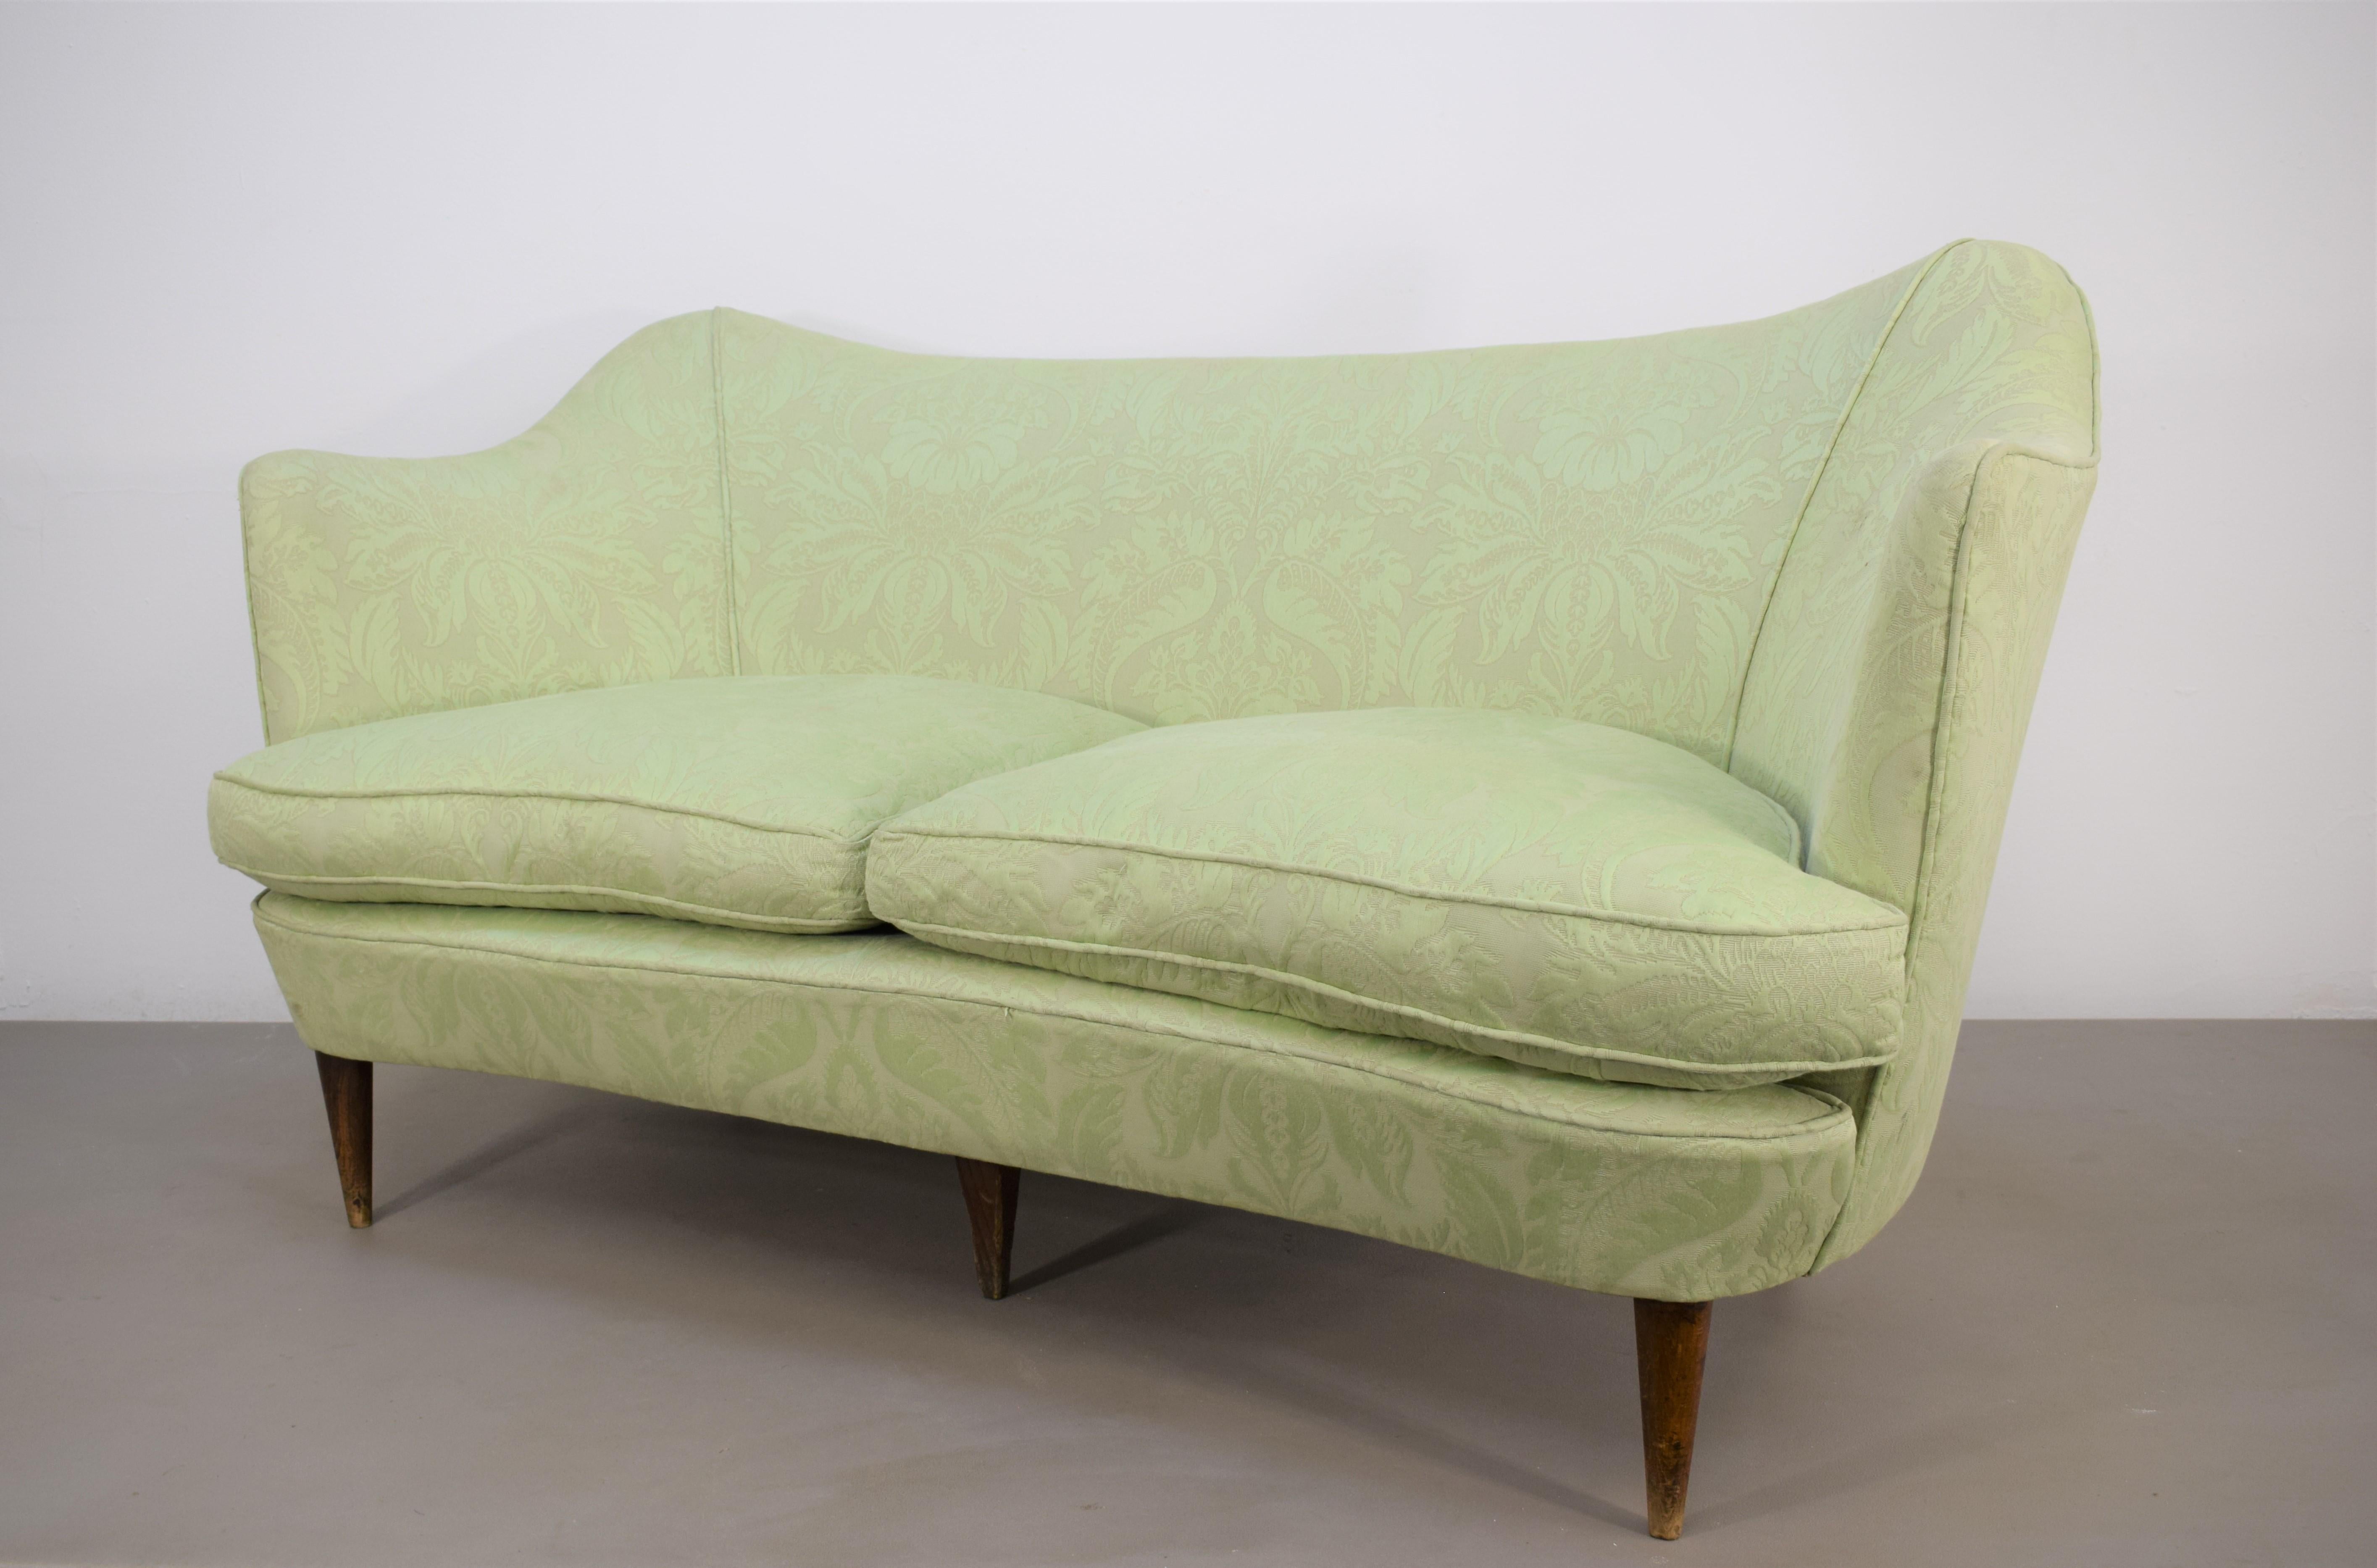 Italienisches Sofa von Casa e Giardino, 1950er Jahre.

Abmessungen: H= 75 cm; B= 142 cm; T= 75 cm; H Sitz= 38 cm.